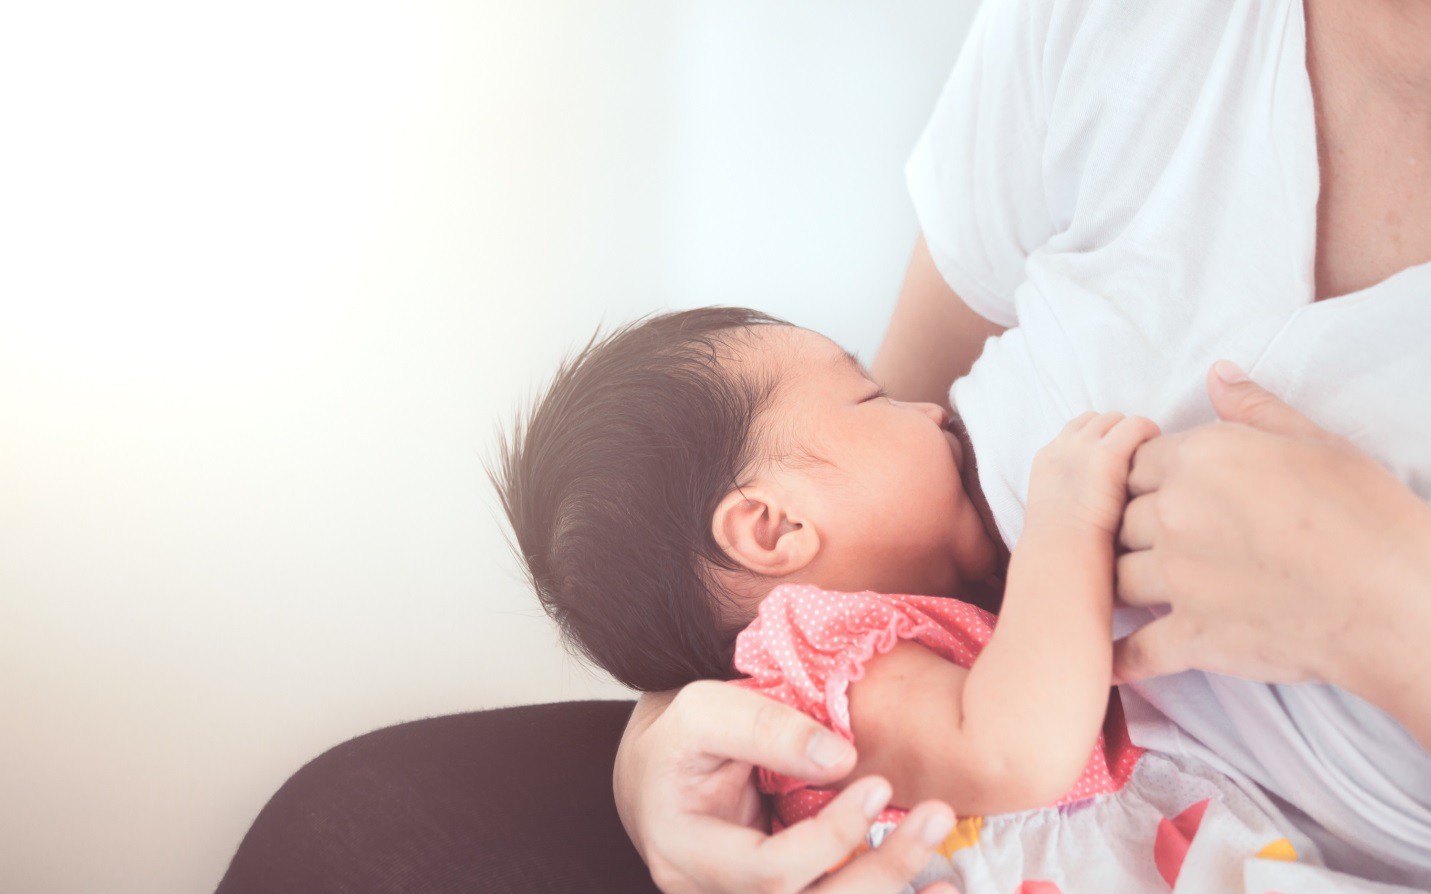 Dinh dưỡng trong sữa mẹ giúp giảm bệnh tật và tử vong ở trẻ 